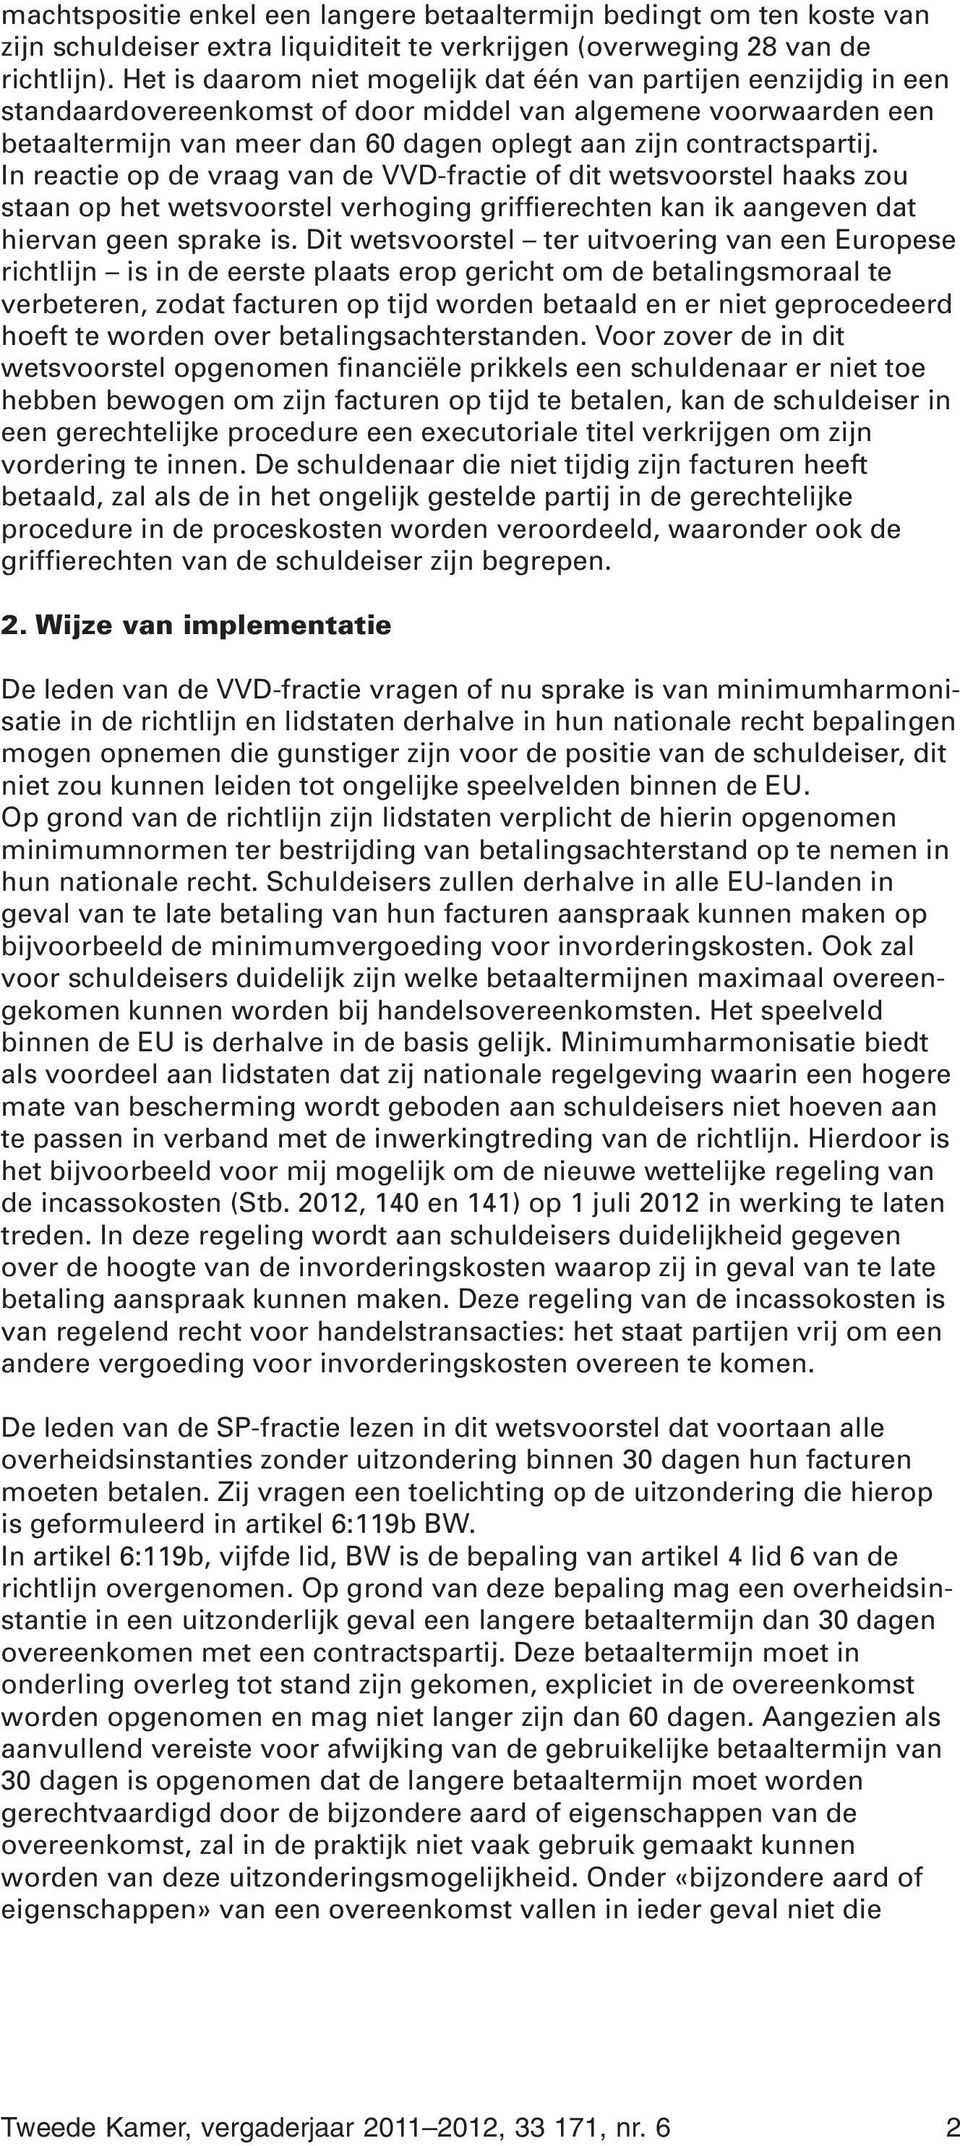 In reactie op de vraag van de VVD-fractie of dit wetsvoorstel haaks zou staan op het wetsvoorstel verhoging griffierechten kan ik aangeven dat hiervan geen sprake is.